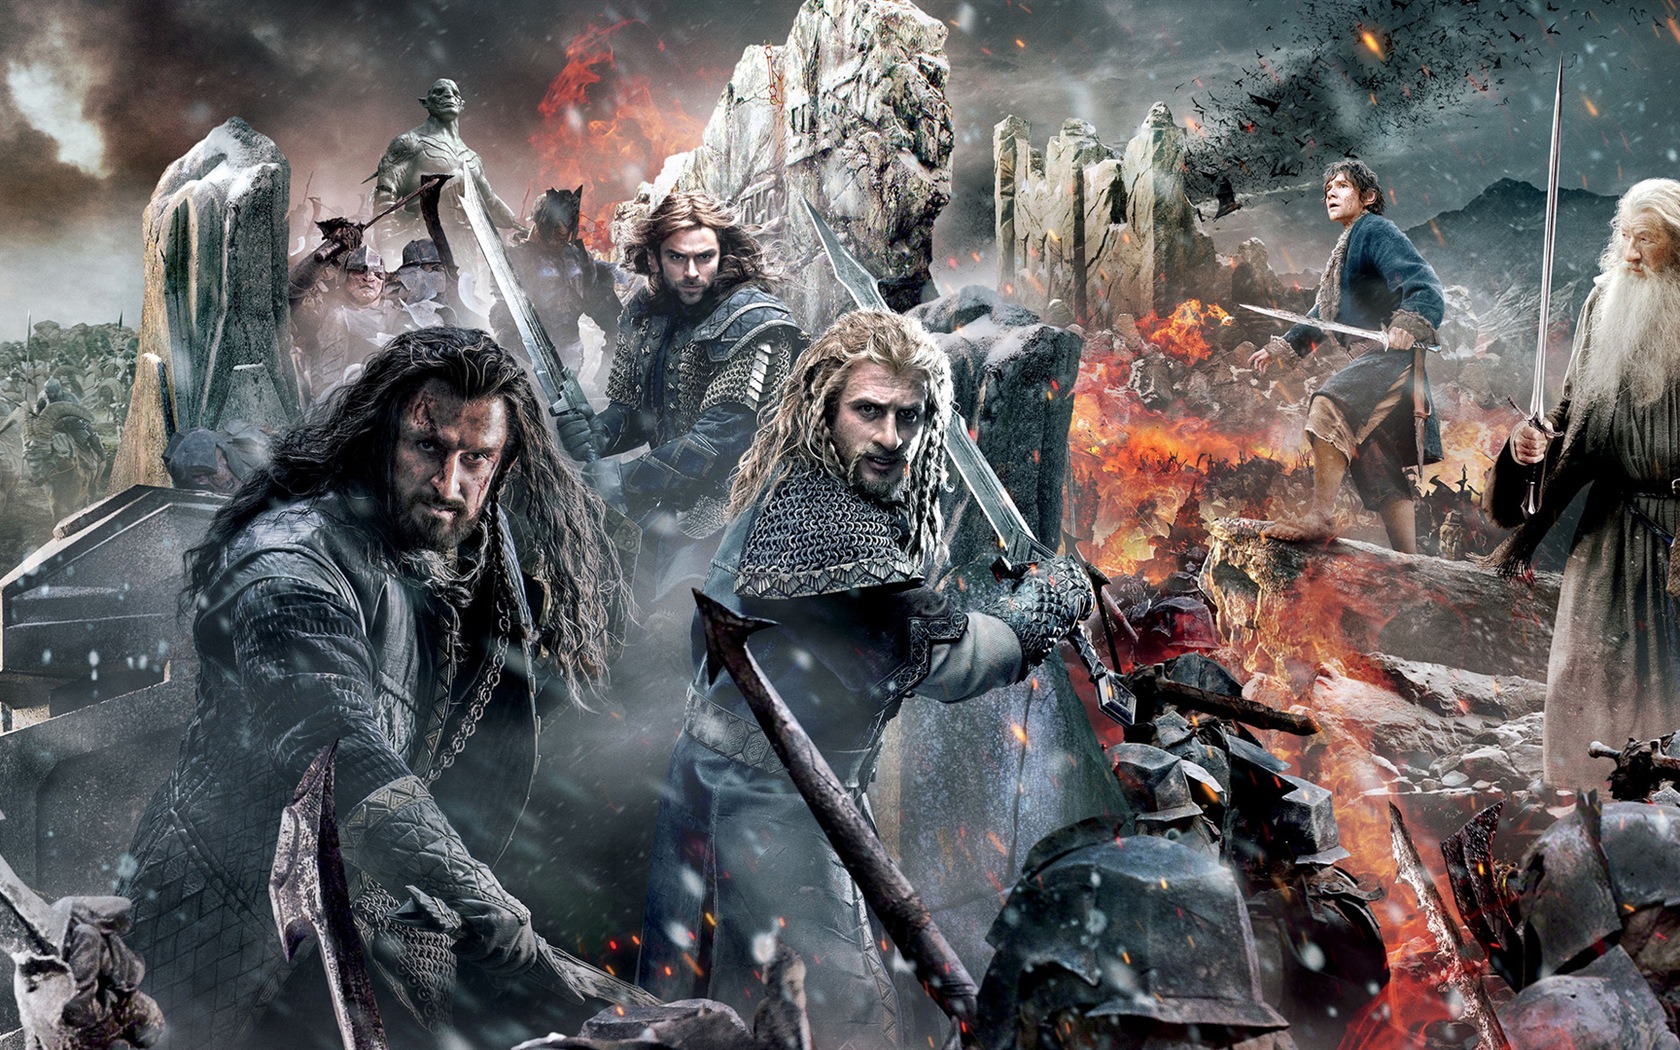 El Hobbit: La Batalla de los Cinco Ejércitos, fondos de pantalla de películas de alta definición #1 - 1680x1050